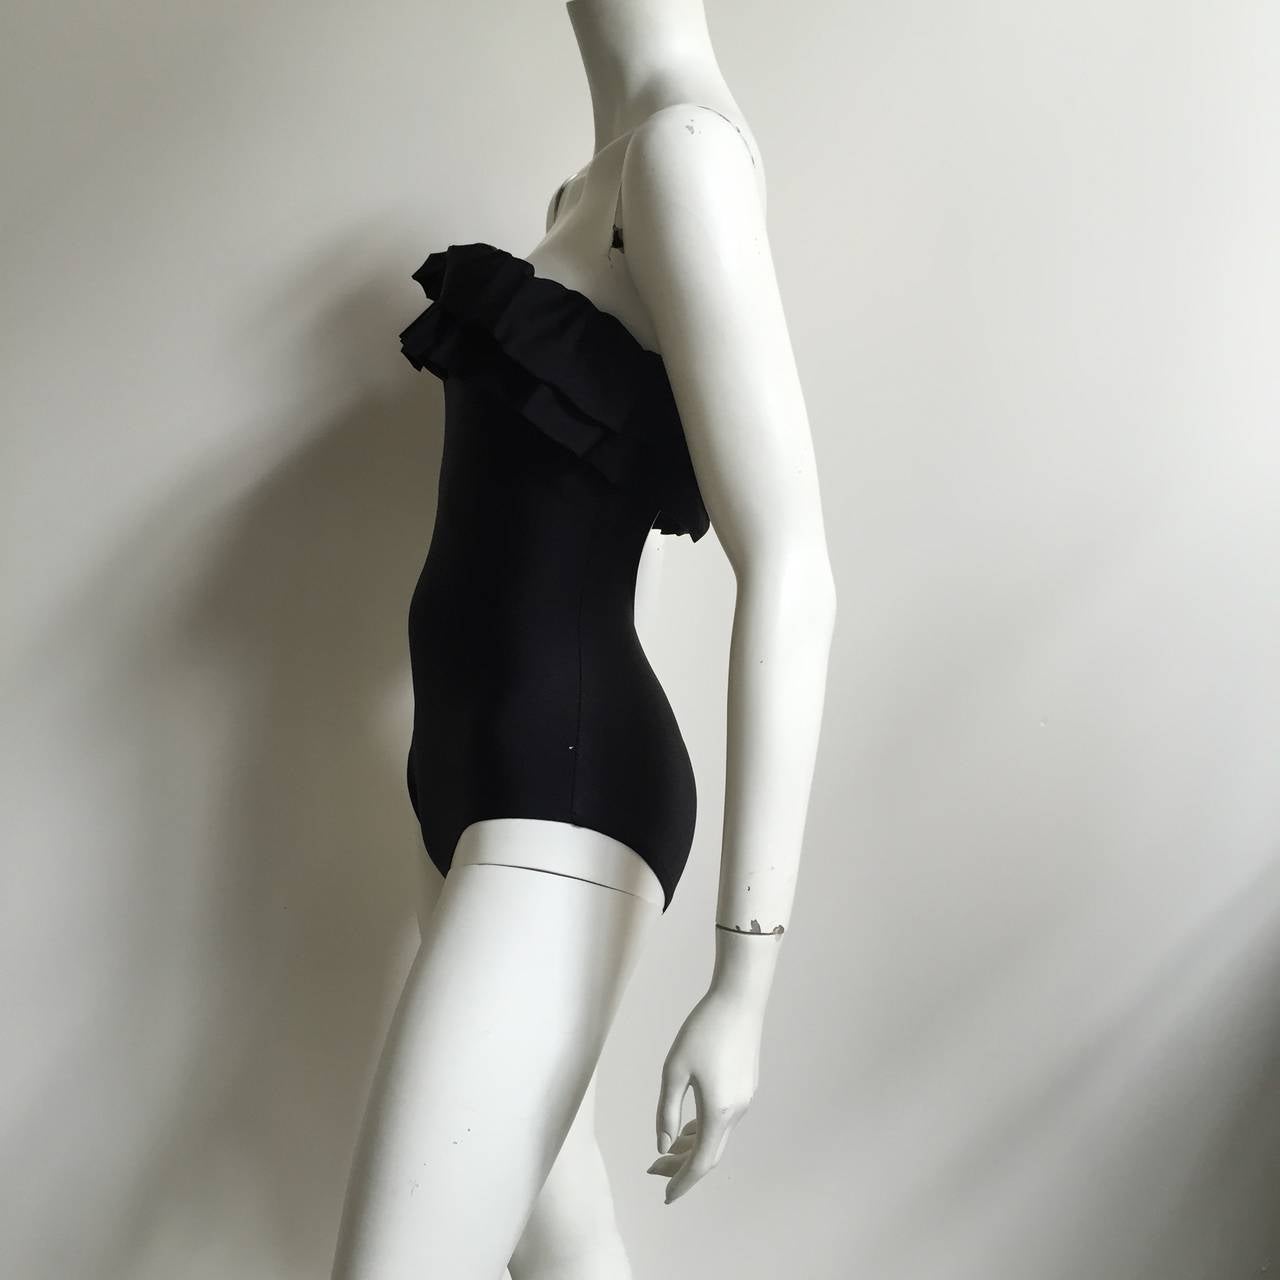 Women's Bill Blass 70s black ruffled swimsuit size 4.